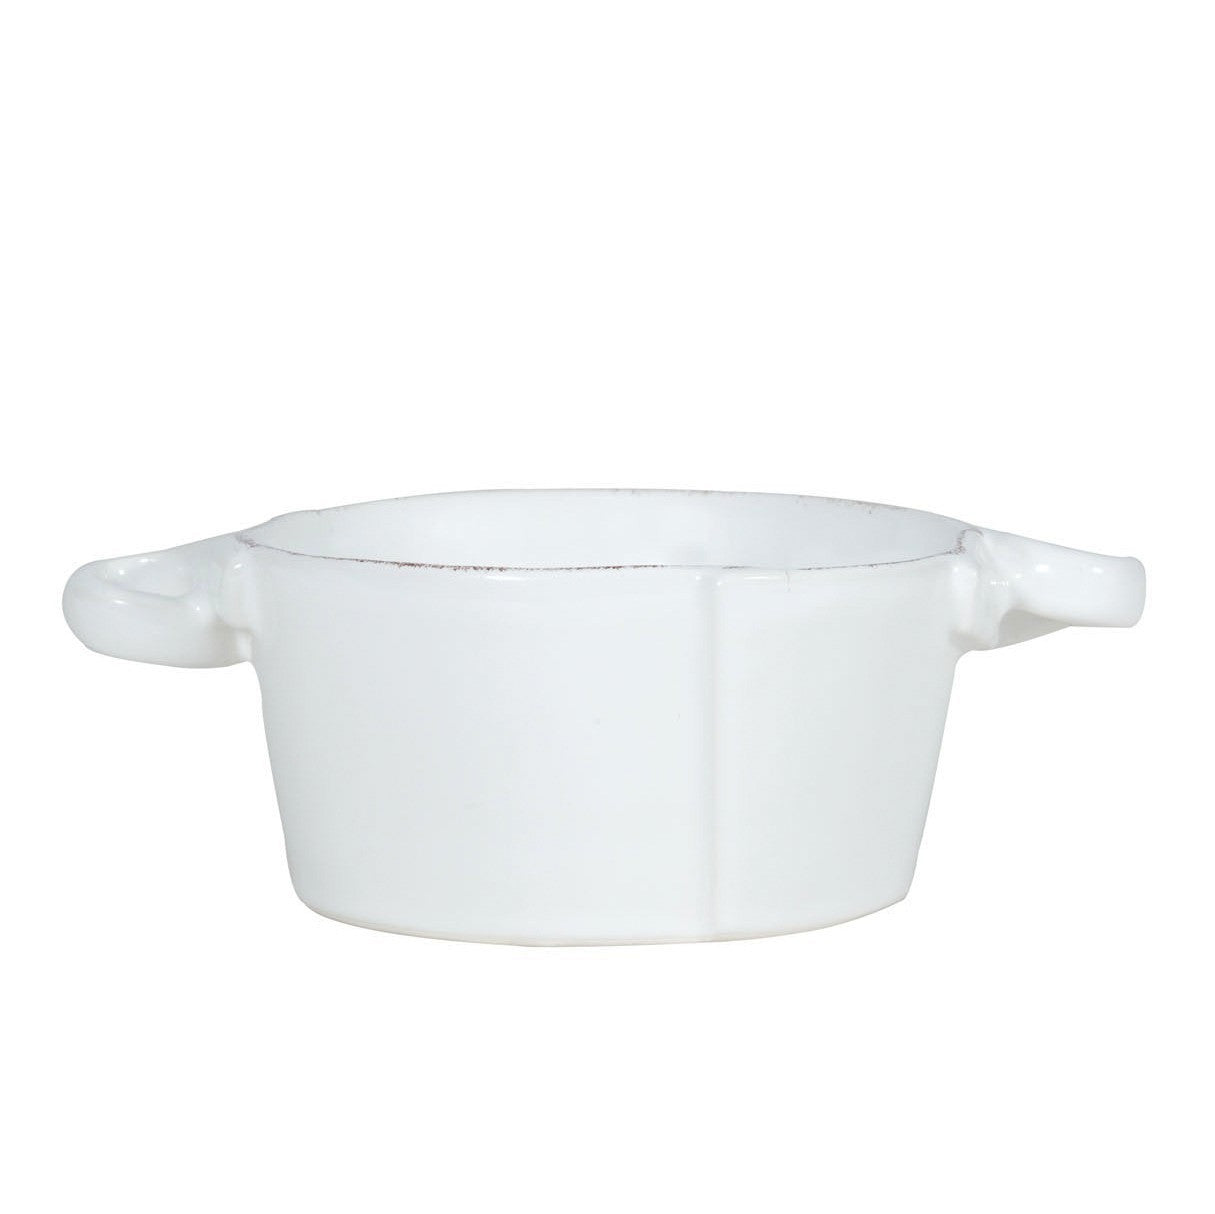 VIETRI: Lastra White Small Handled Bowl - Artistica.com